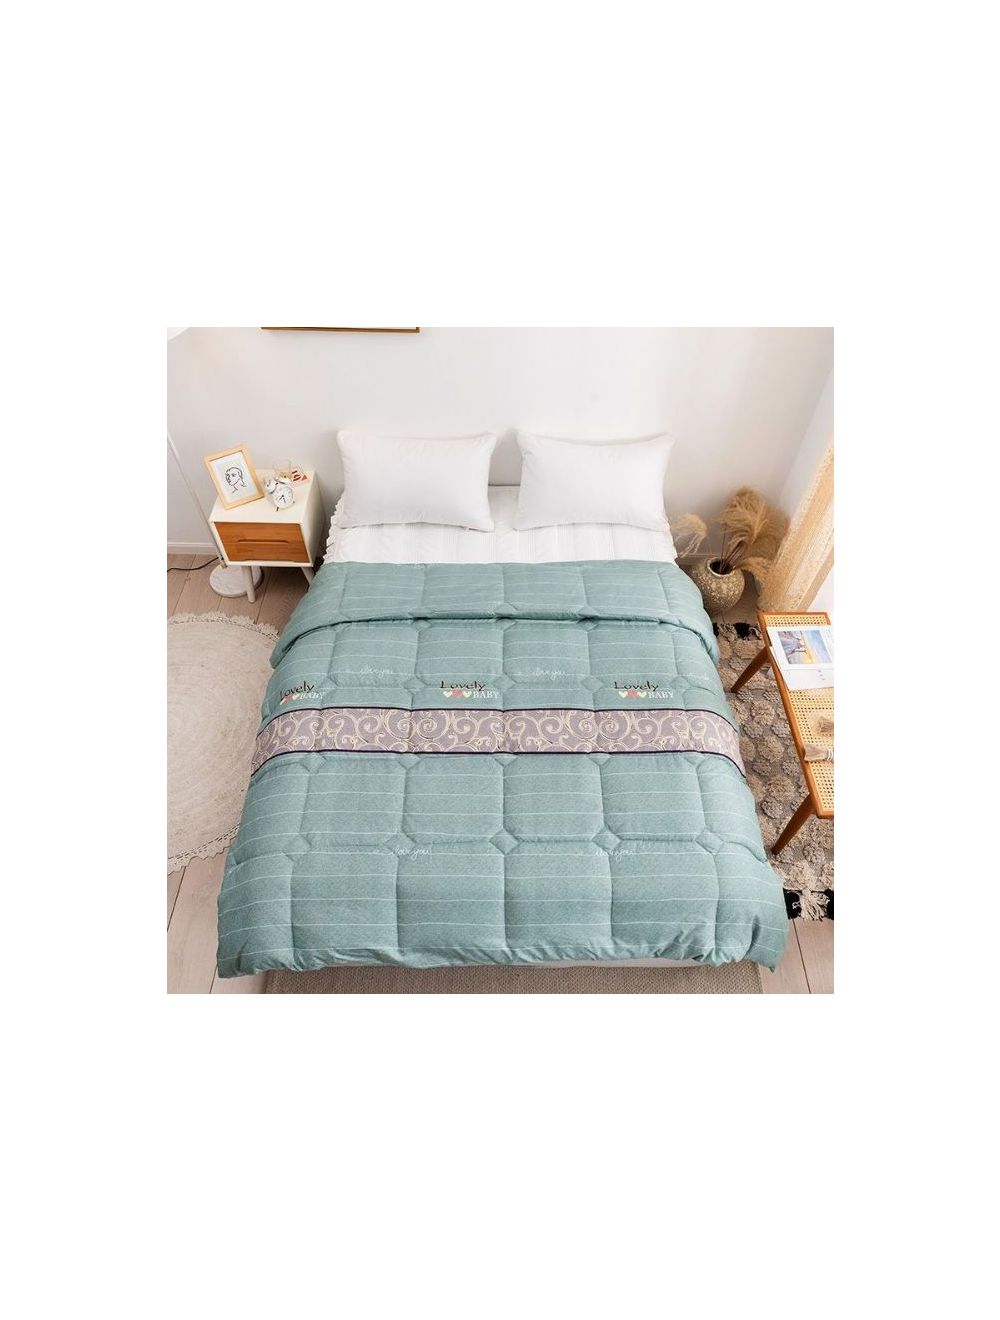 Rishahome Green Spring Queen Size Comforter Microfiber Multicolour 210x230cm-GSPC0002